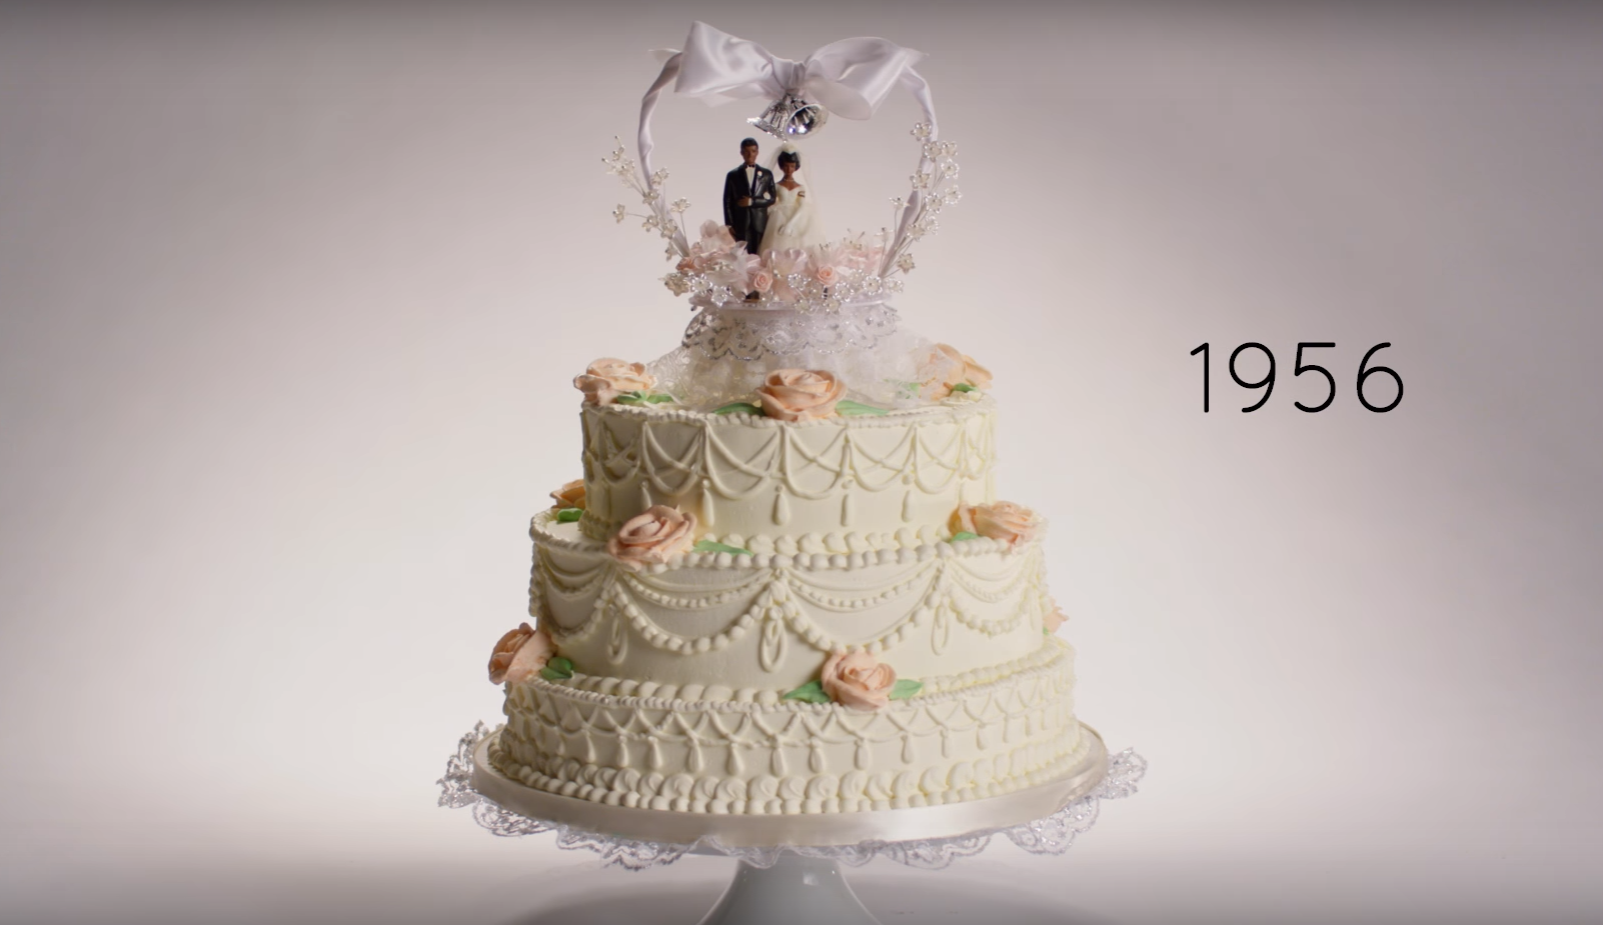 Els pastissos de noces, des de 1916 fins avui